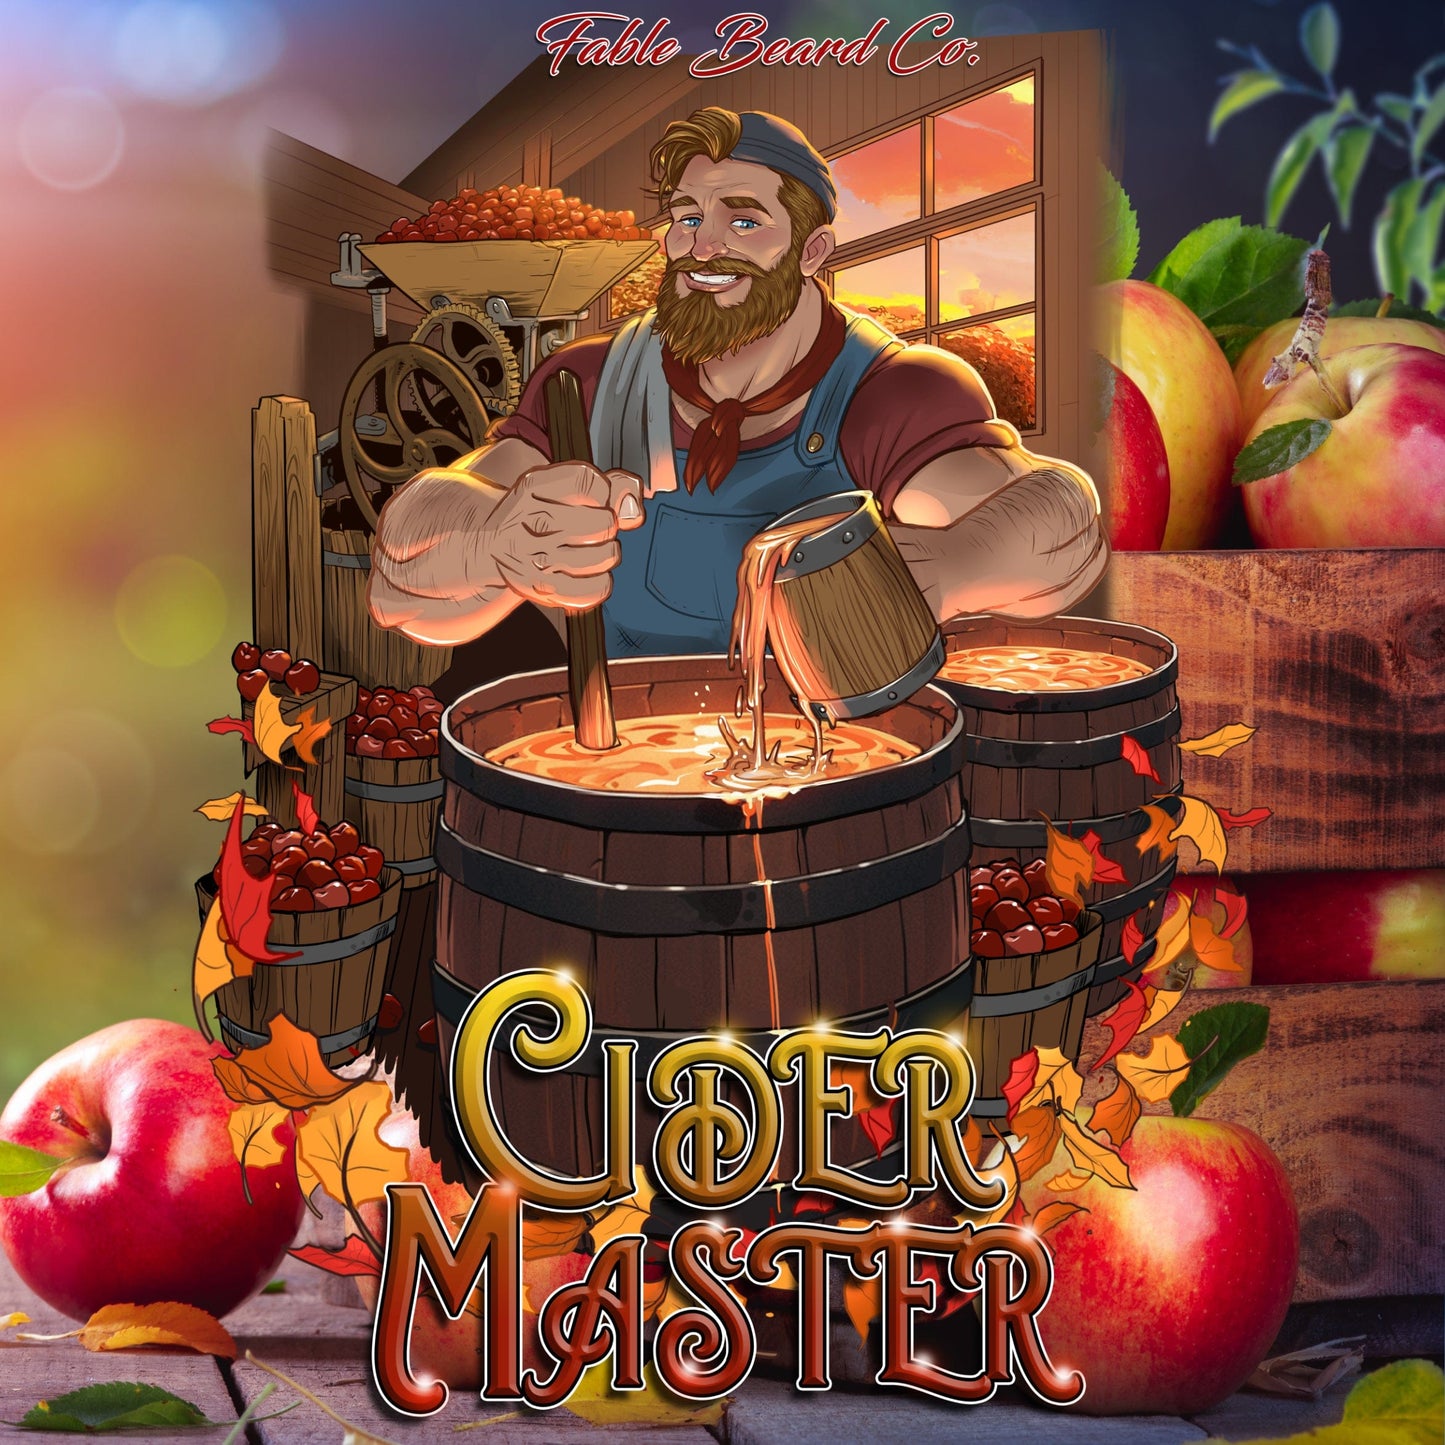 Cider Master - Apple Cider Memories Beard Oil & Butter Kit